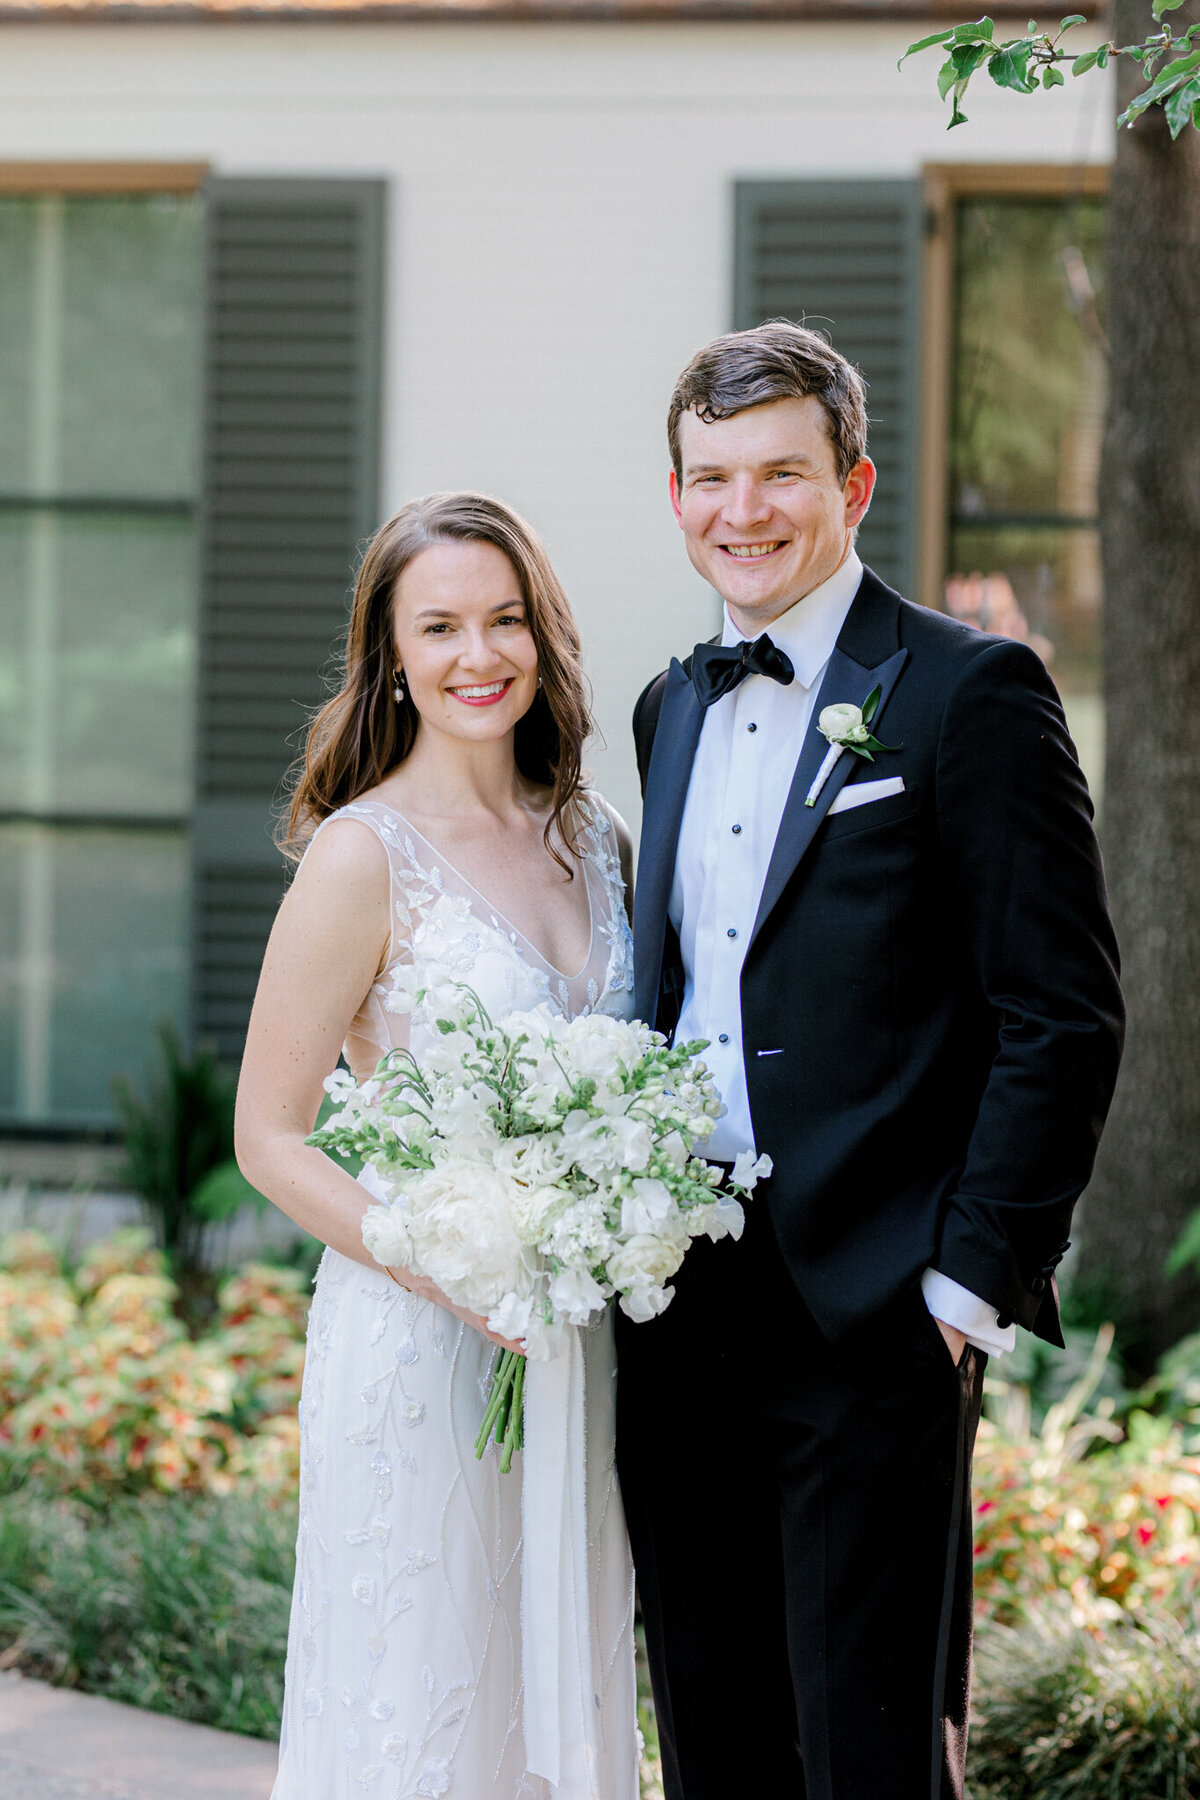 Gena & Matt's Wedding at the Dallas Arboretum | Dallas Wedding Photographer | Sami Kathryn Photography-120